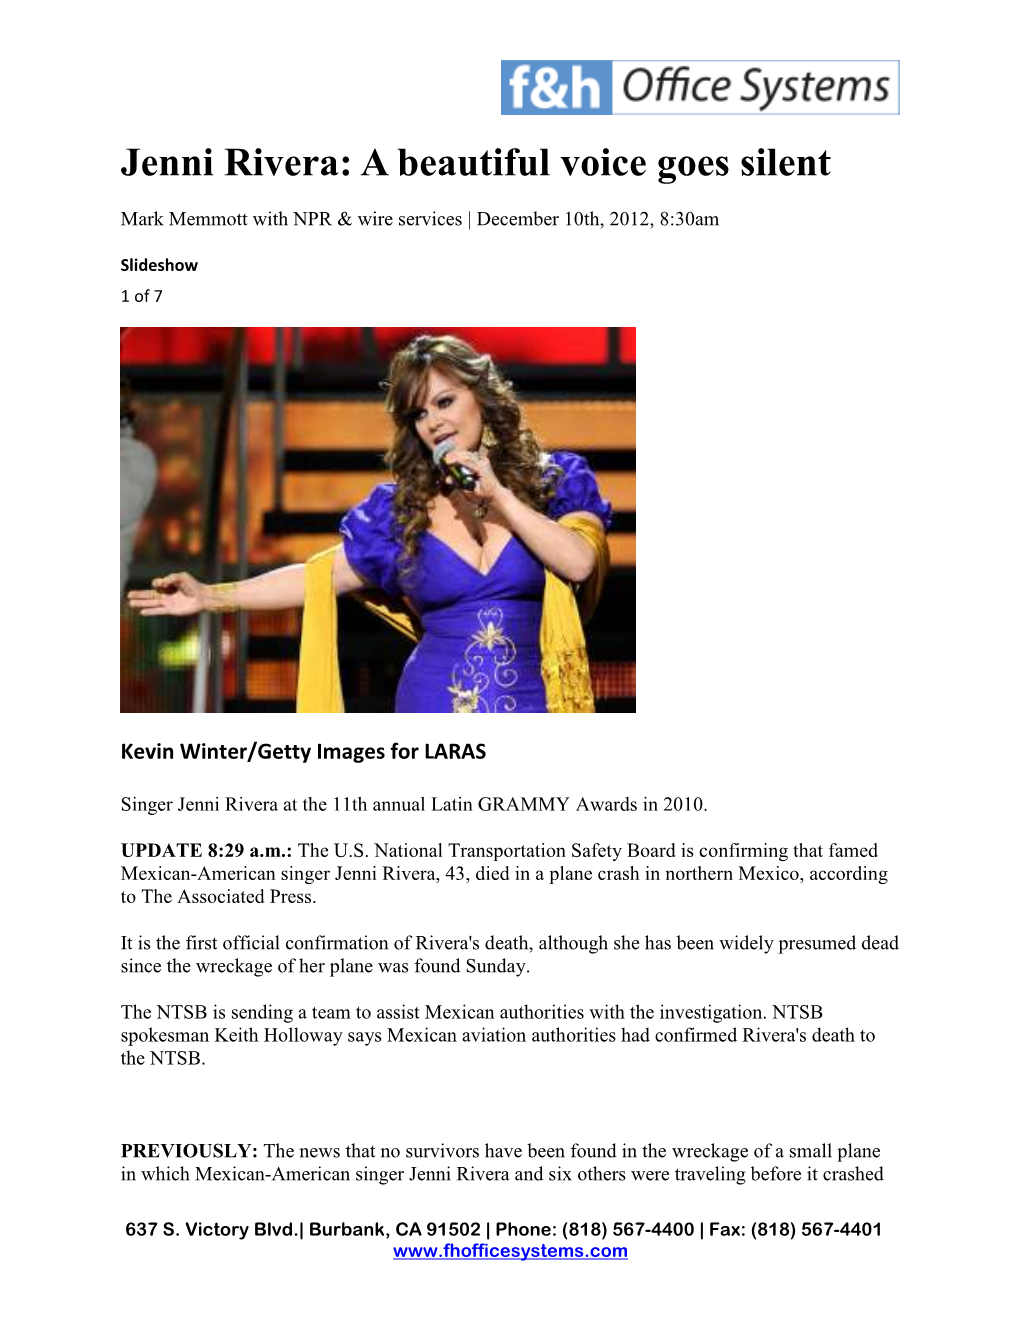 Jenni Rivera: a Beautiful Voice Goes Silent